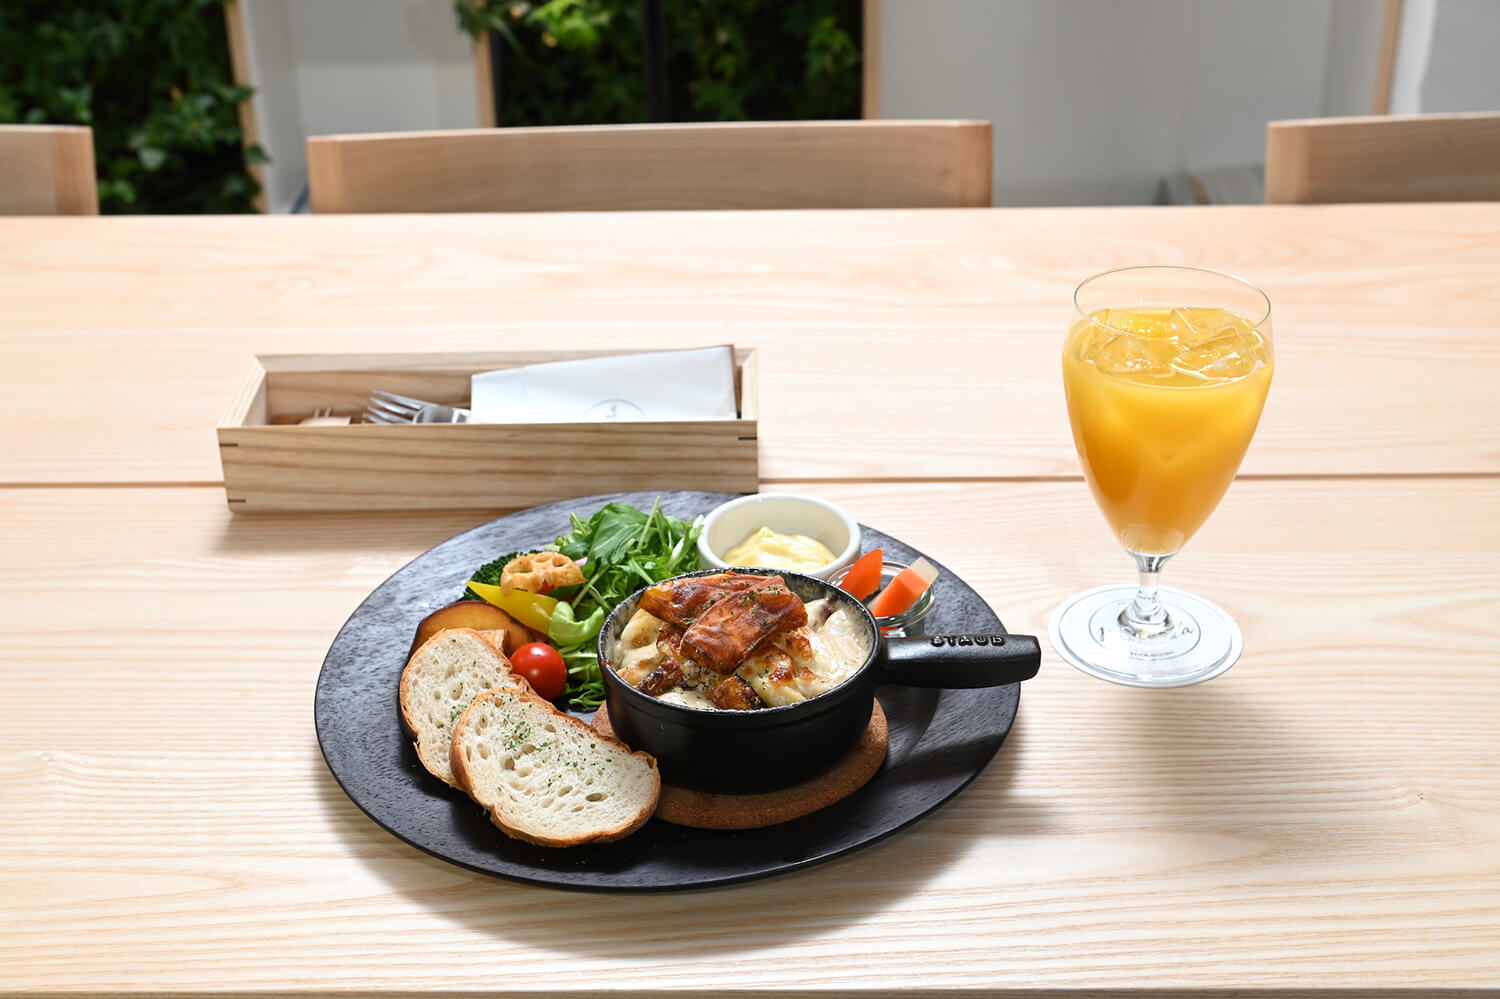 料理の味を引き立てる北海道産の野菜が添えられた「野菜たっぷりサラダプレート」（スープ・ライスorバケット付）1250円とオレンジジュース450円